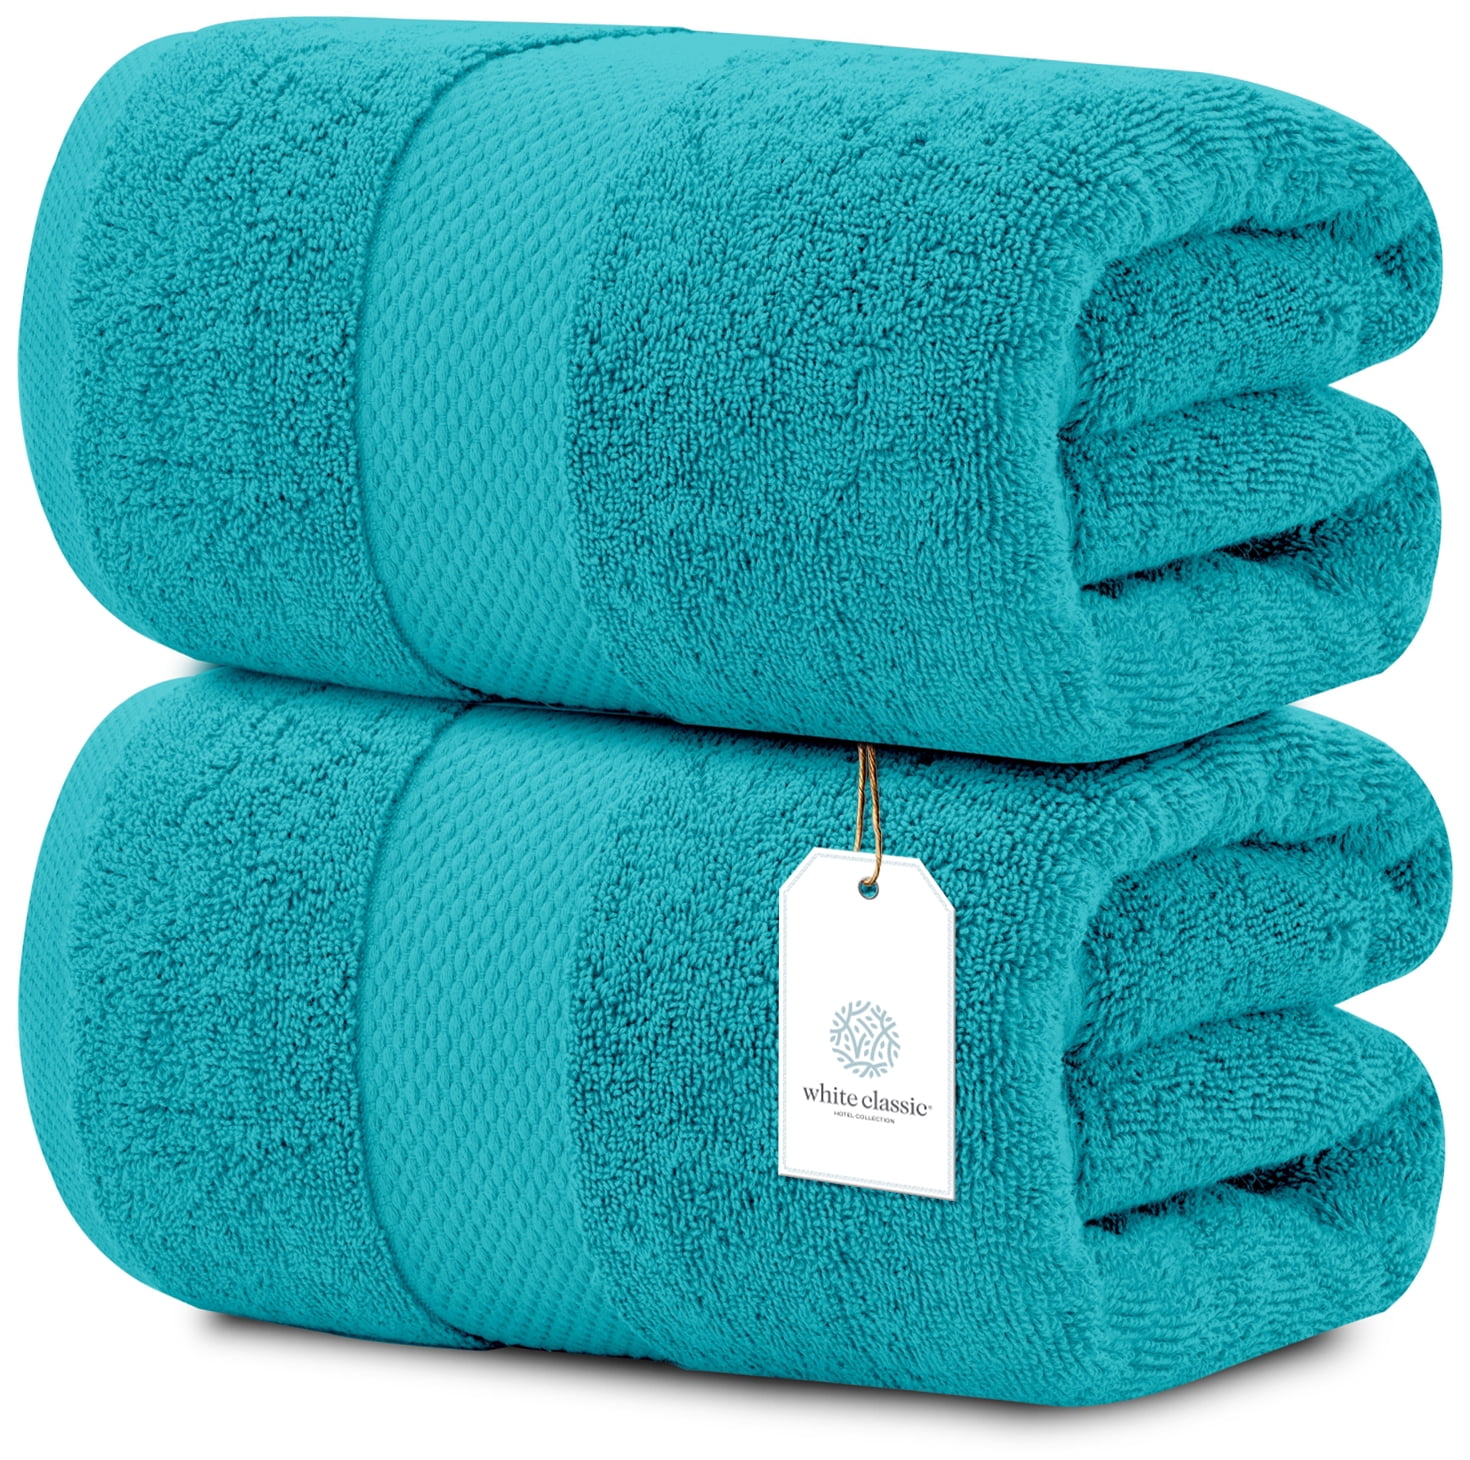 Luxury Bath Sheet Towels Extra Large 35x70 Inch Pack, Aqua